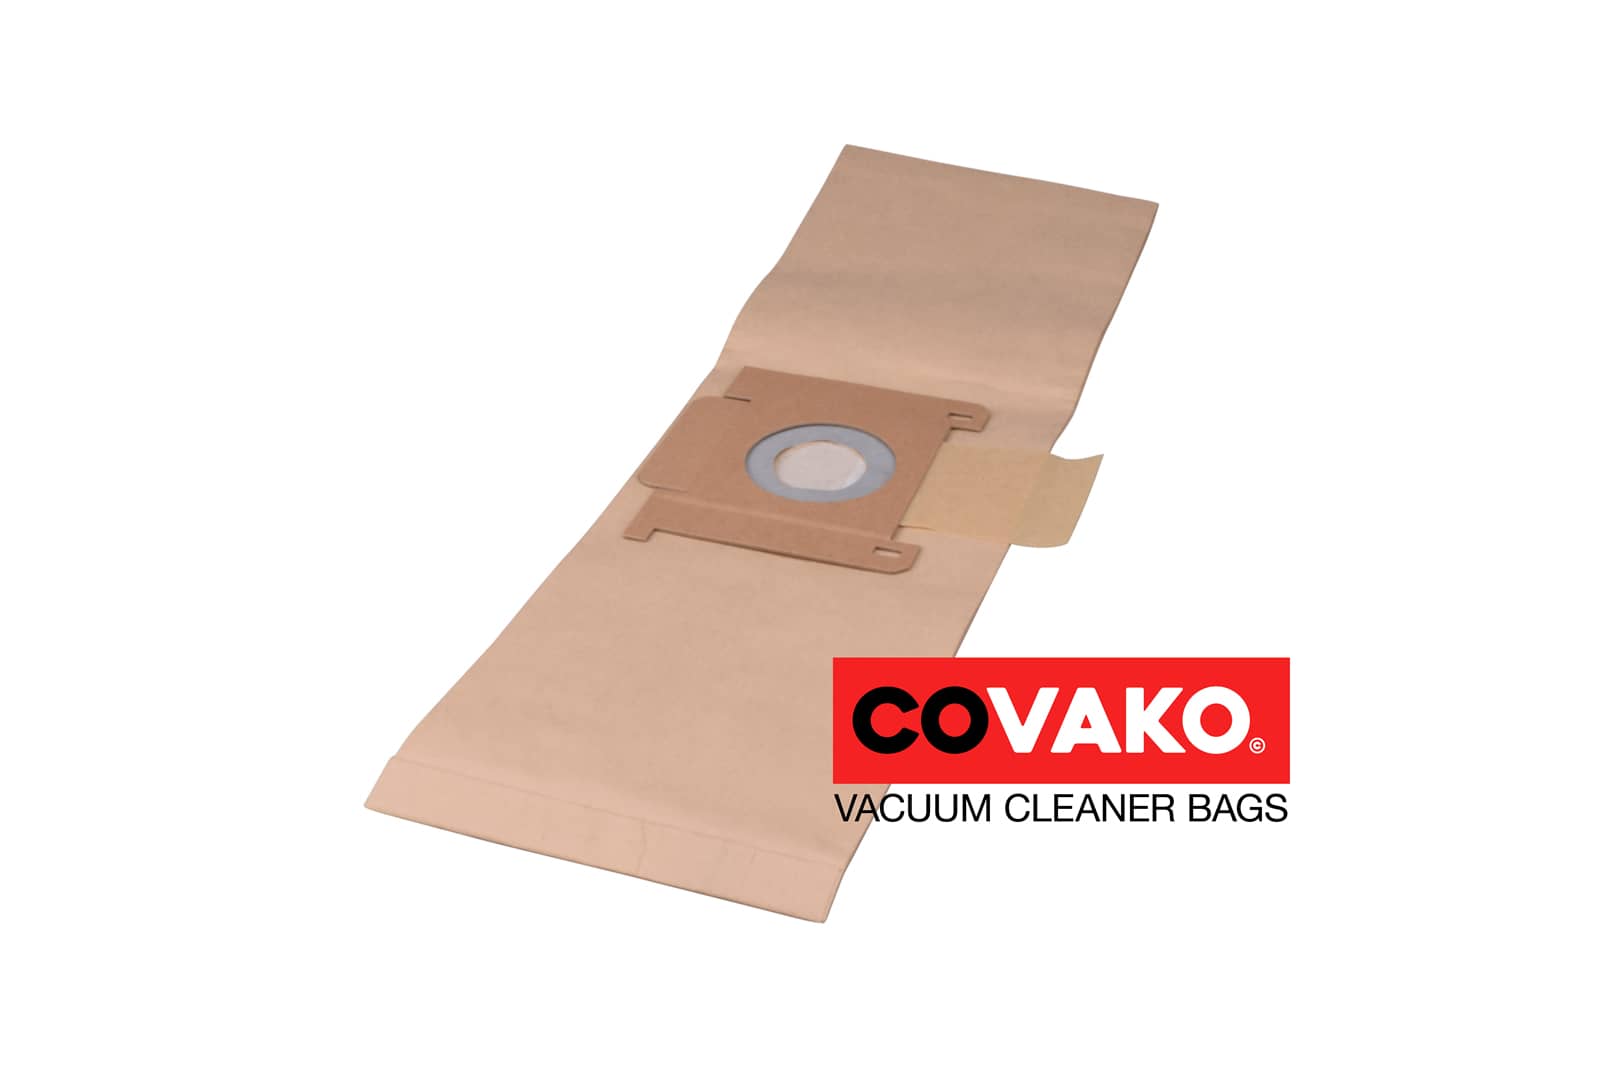 I-vac tito 6 / Paper - I-vac vacuum cleaner bags